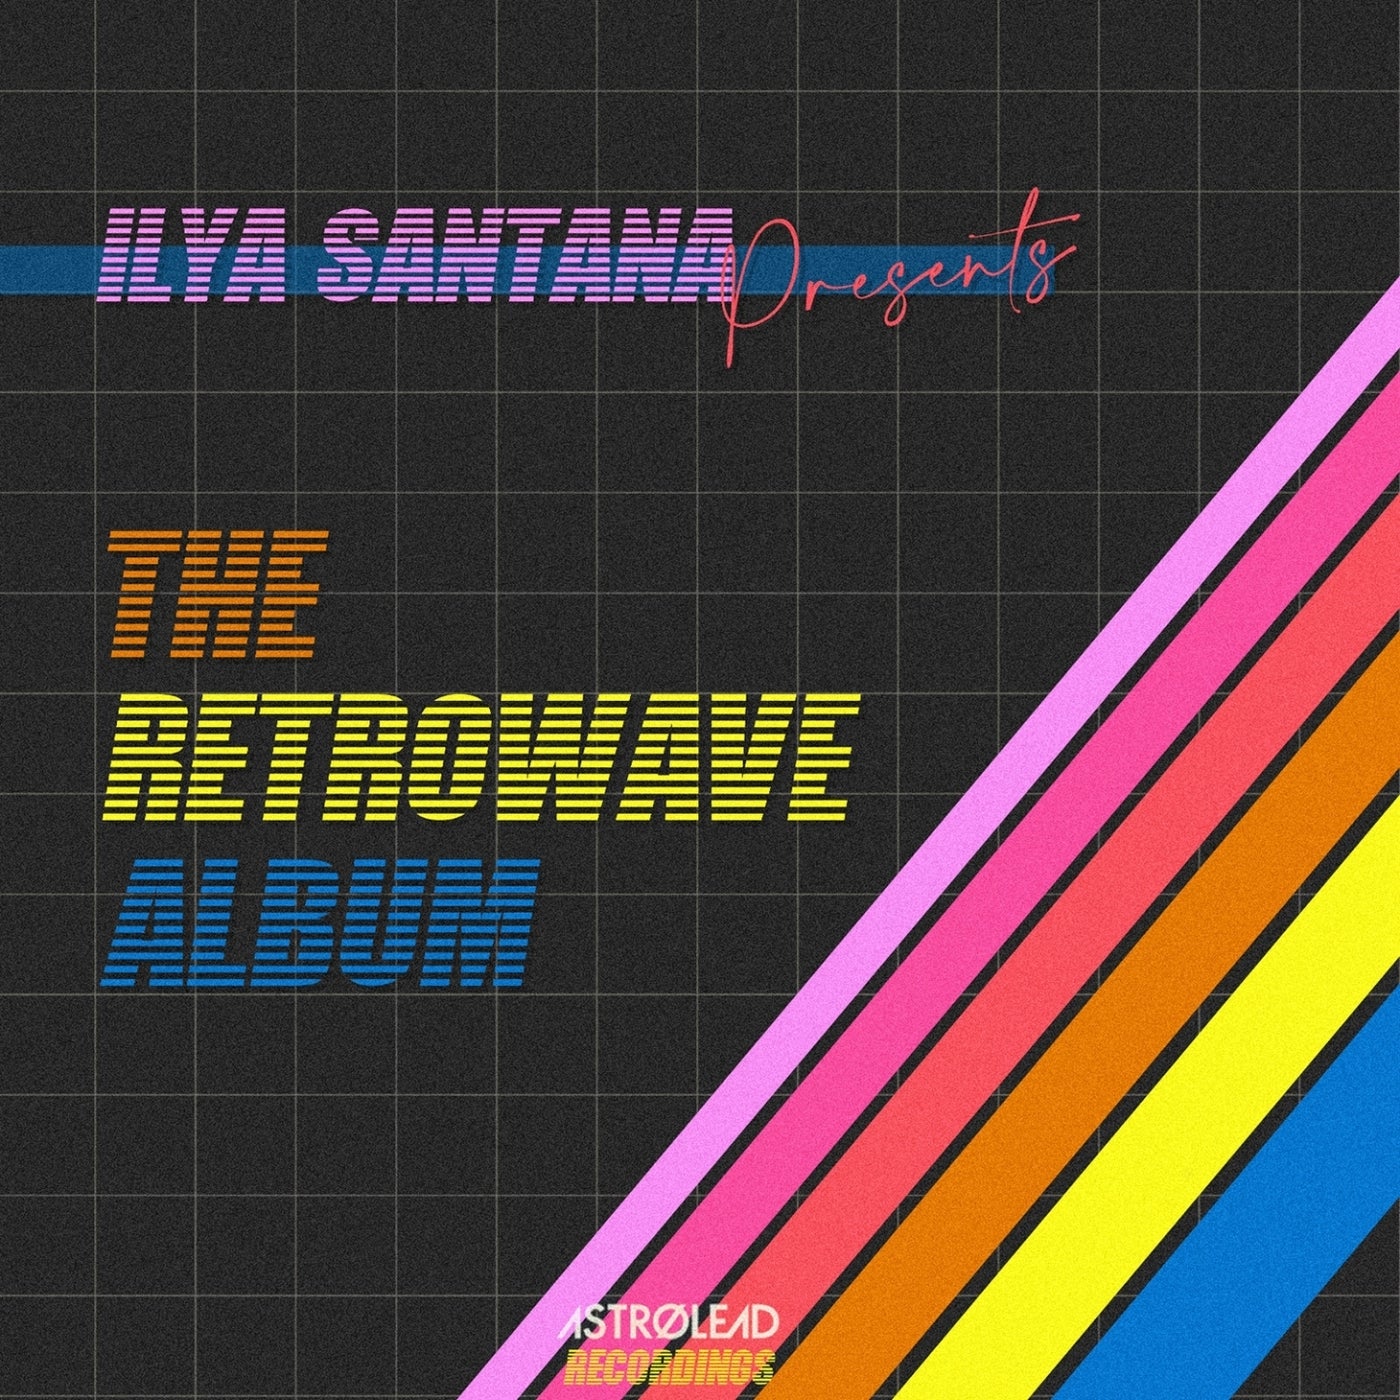 The Retrowave Album